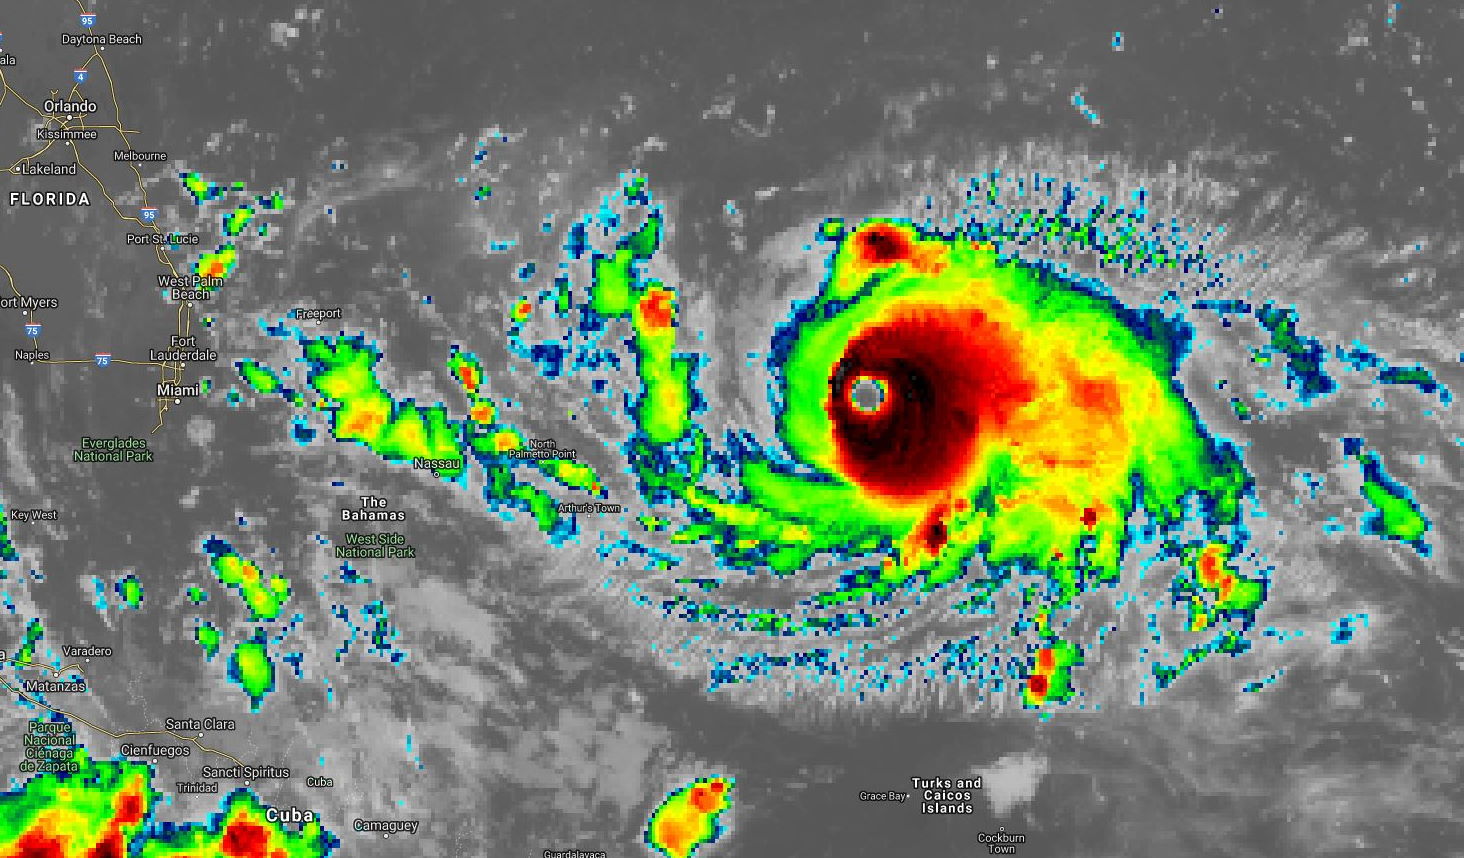 10h temps universel. La partie centrale du cyclone devient encore plus intense étant plus réduite en extension dans la partie Ouest.